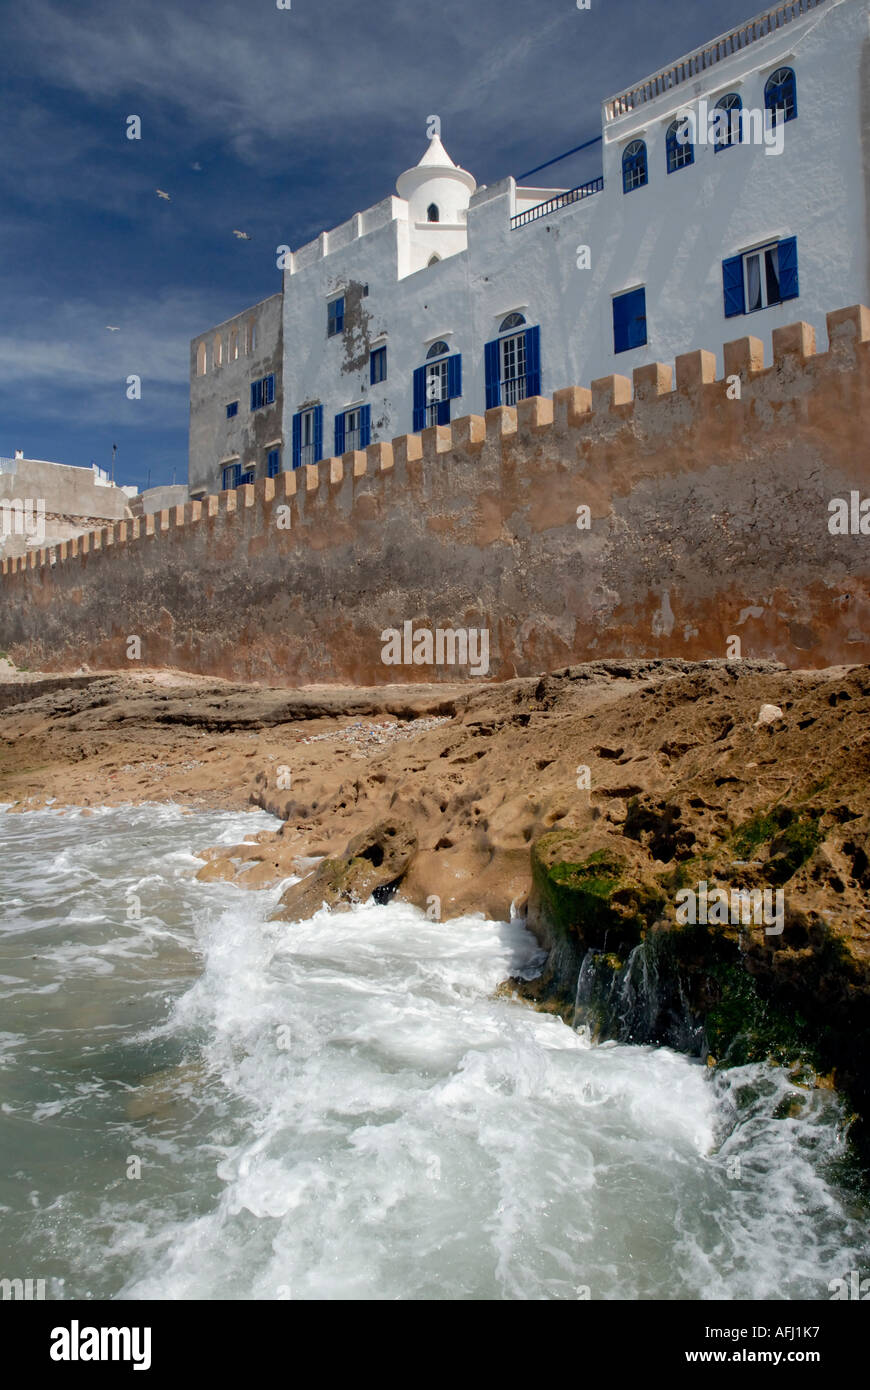 Ansicht von Häusern und alten Burgwall Ufermauer Essaouira Atlantikküste Marokko Nordafrika Stockfoto